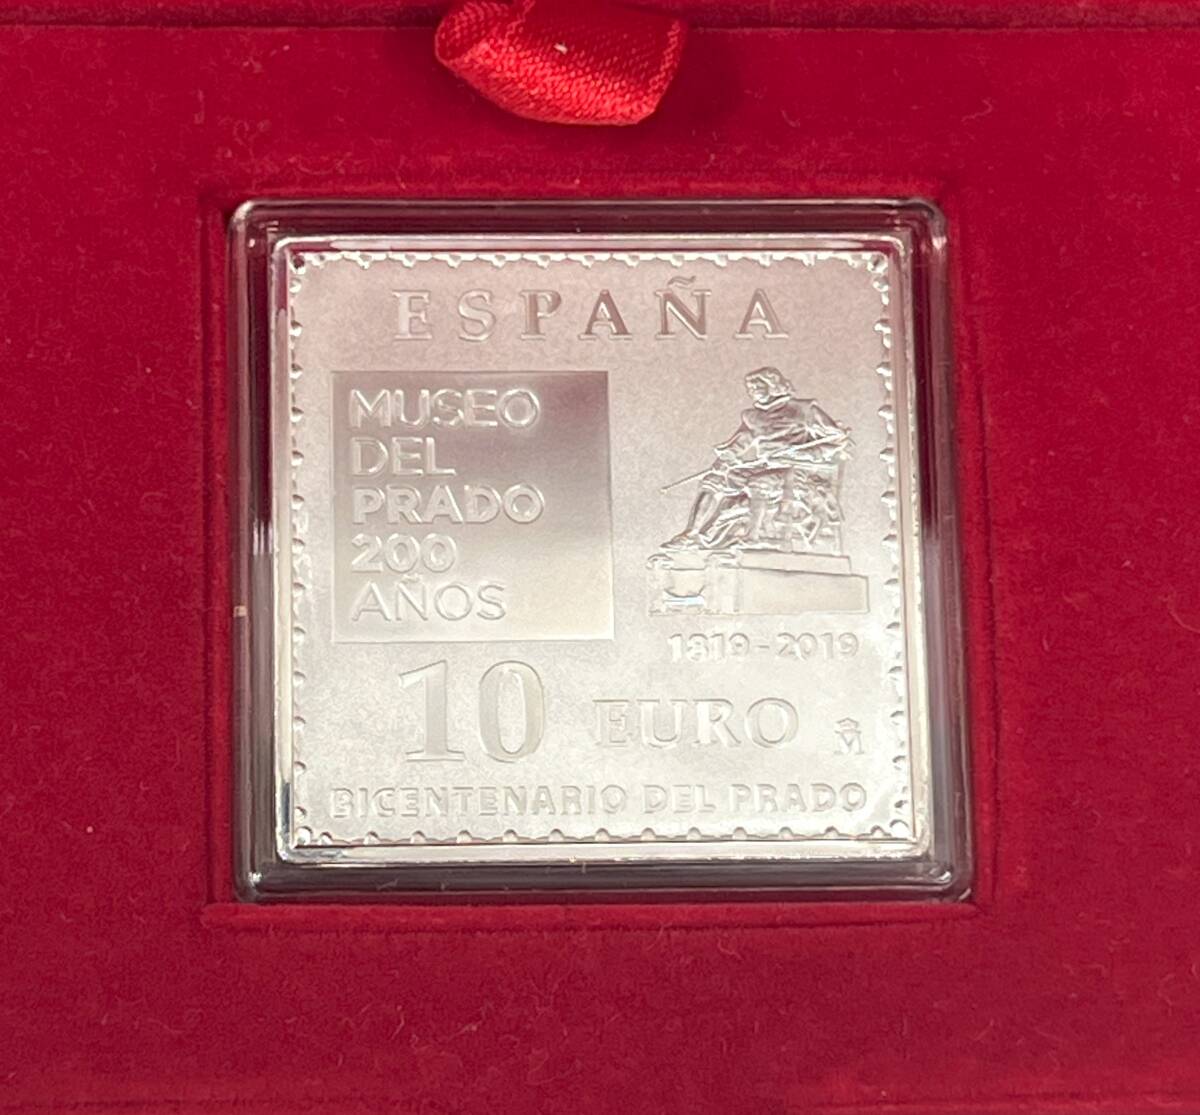 2533■MUSEO DEL PRADO 200 ANOS  プラド美術館 200周年 公式記念コイン  スペイン の画像3